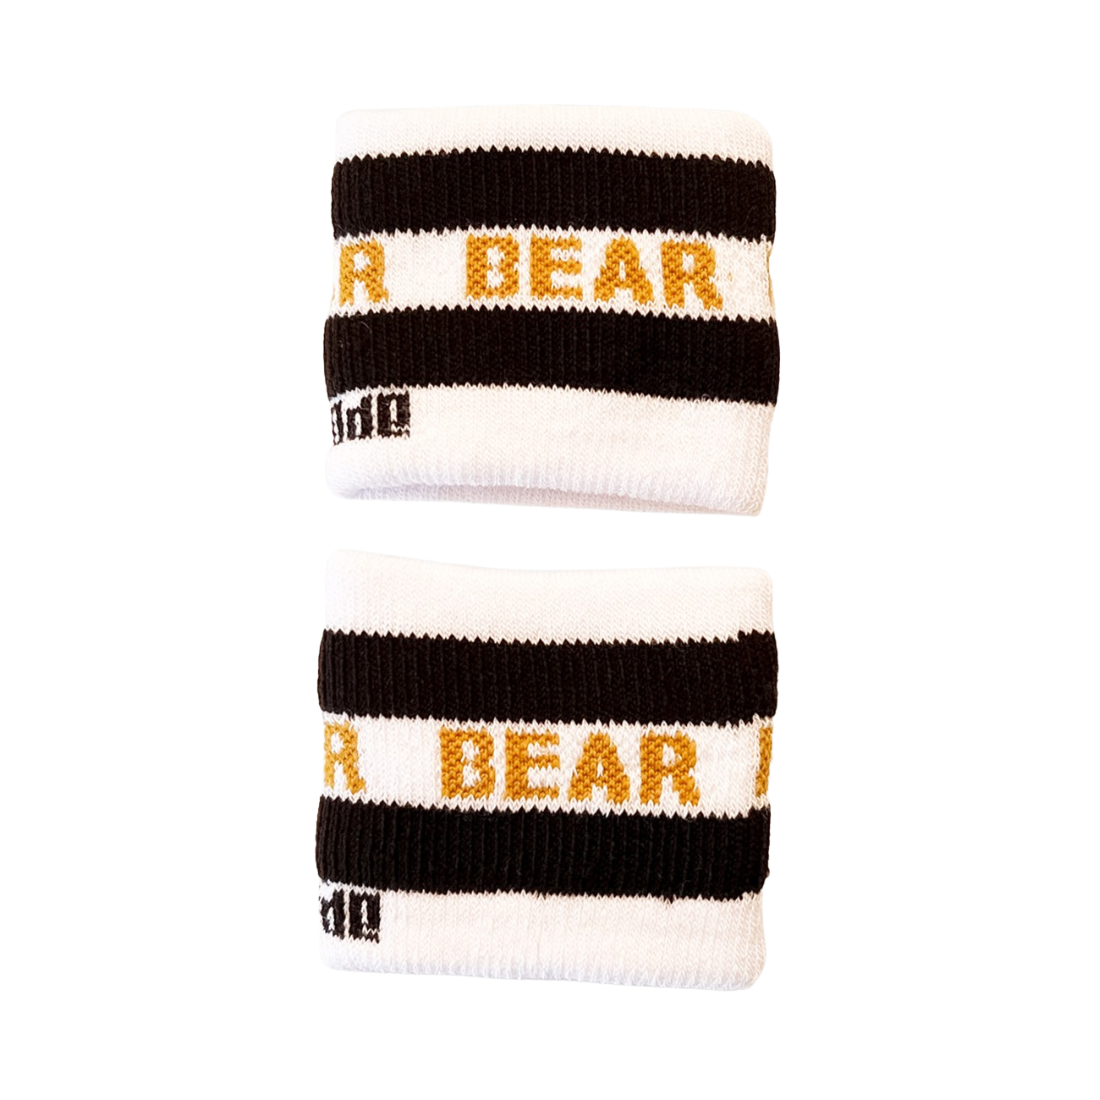 2 'Bear Identity'Polsbandjes ontworpen door Barcode. Producten van Barcode zijn te koop bij Flavourez